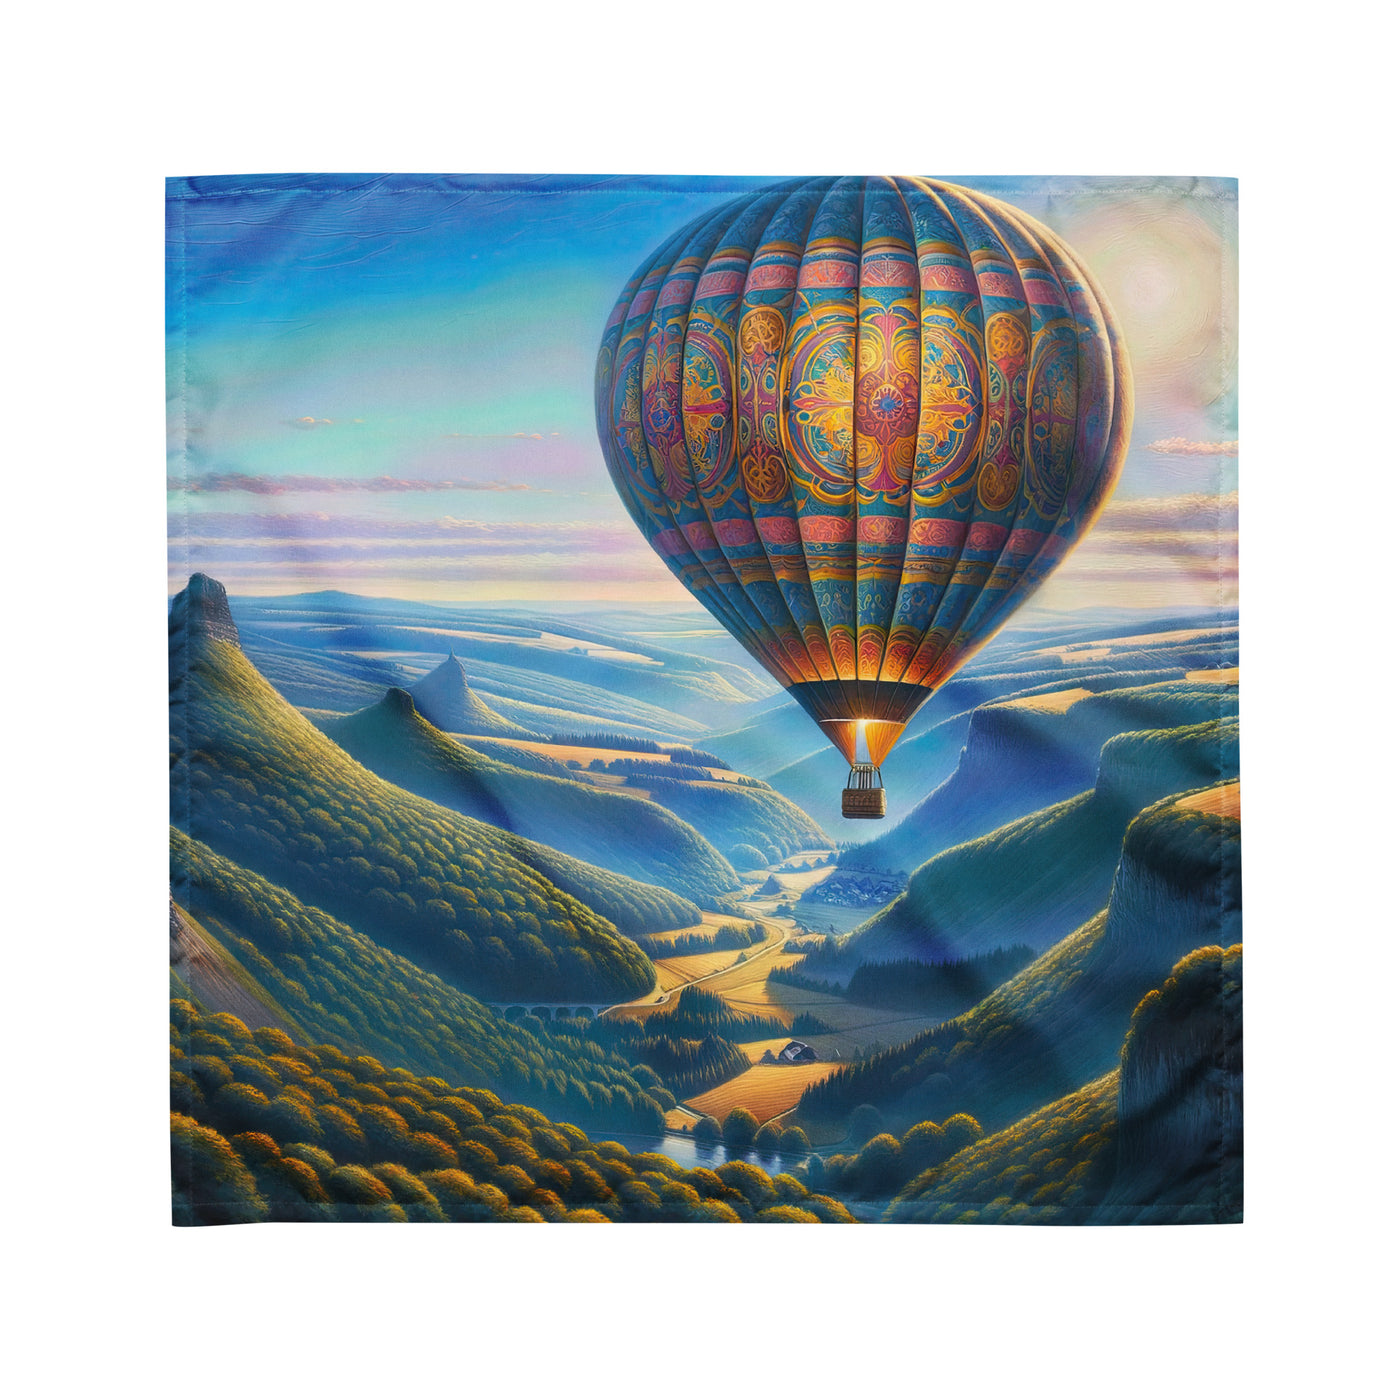 Ölgemälde einer ruhigen Szene mit verziertem Heißluftballon - Bandana (All-Over Print) berge xxx yyy zzz M